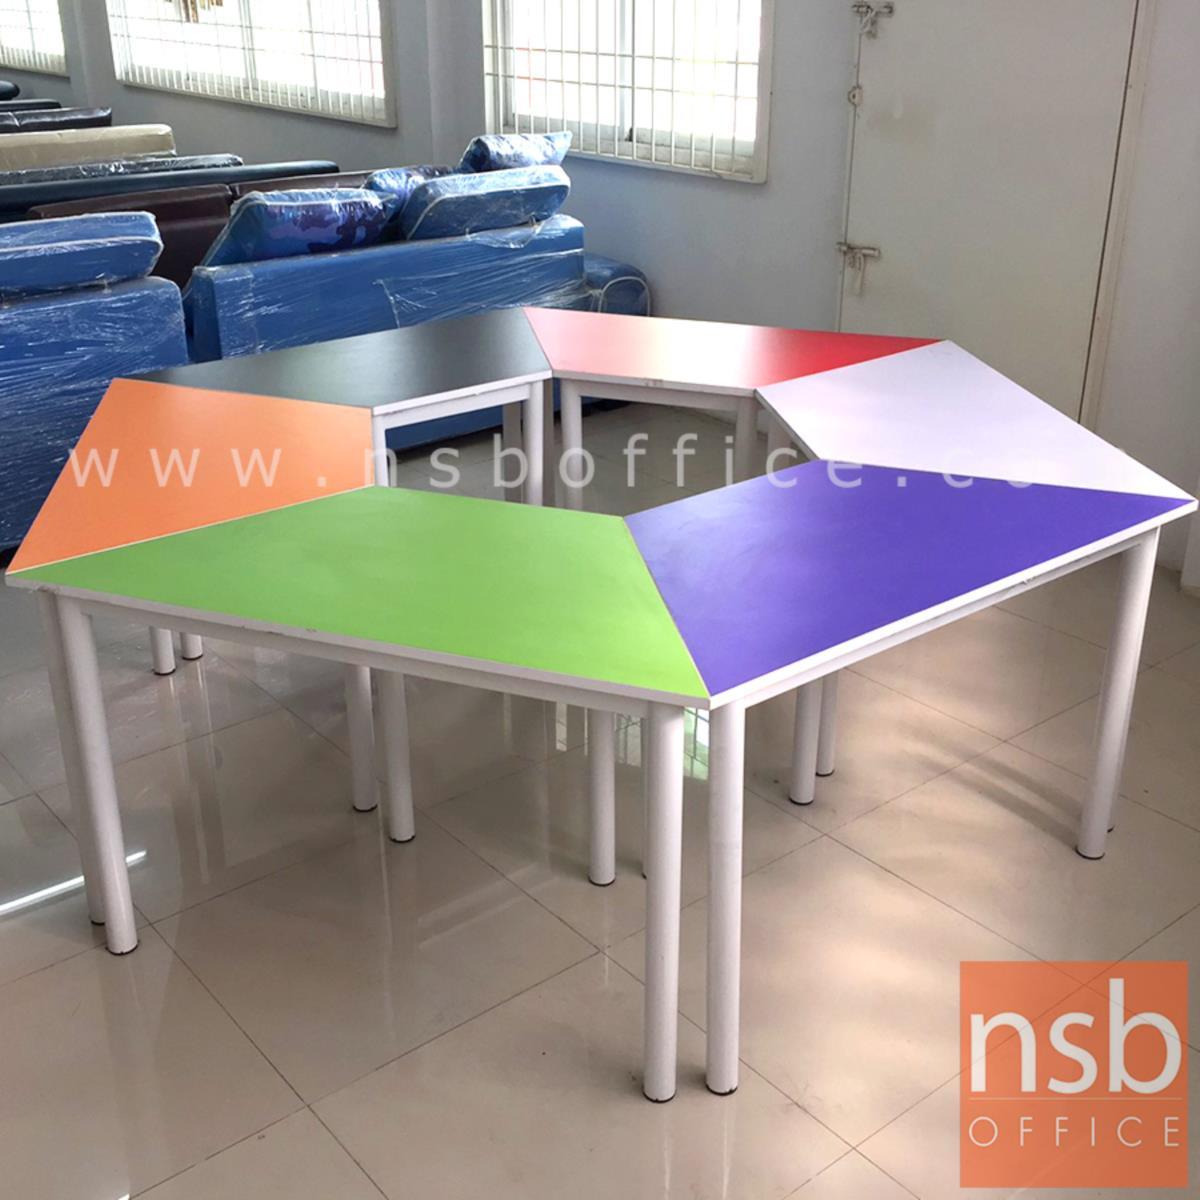 ชุดโต๊ะนักเรียน ทรงคางหมู รุ่น Avada (เอวาด้า) ขนาด 208W*75H cm. TOP ไม้สีสัน